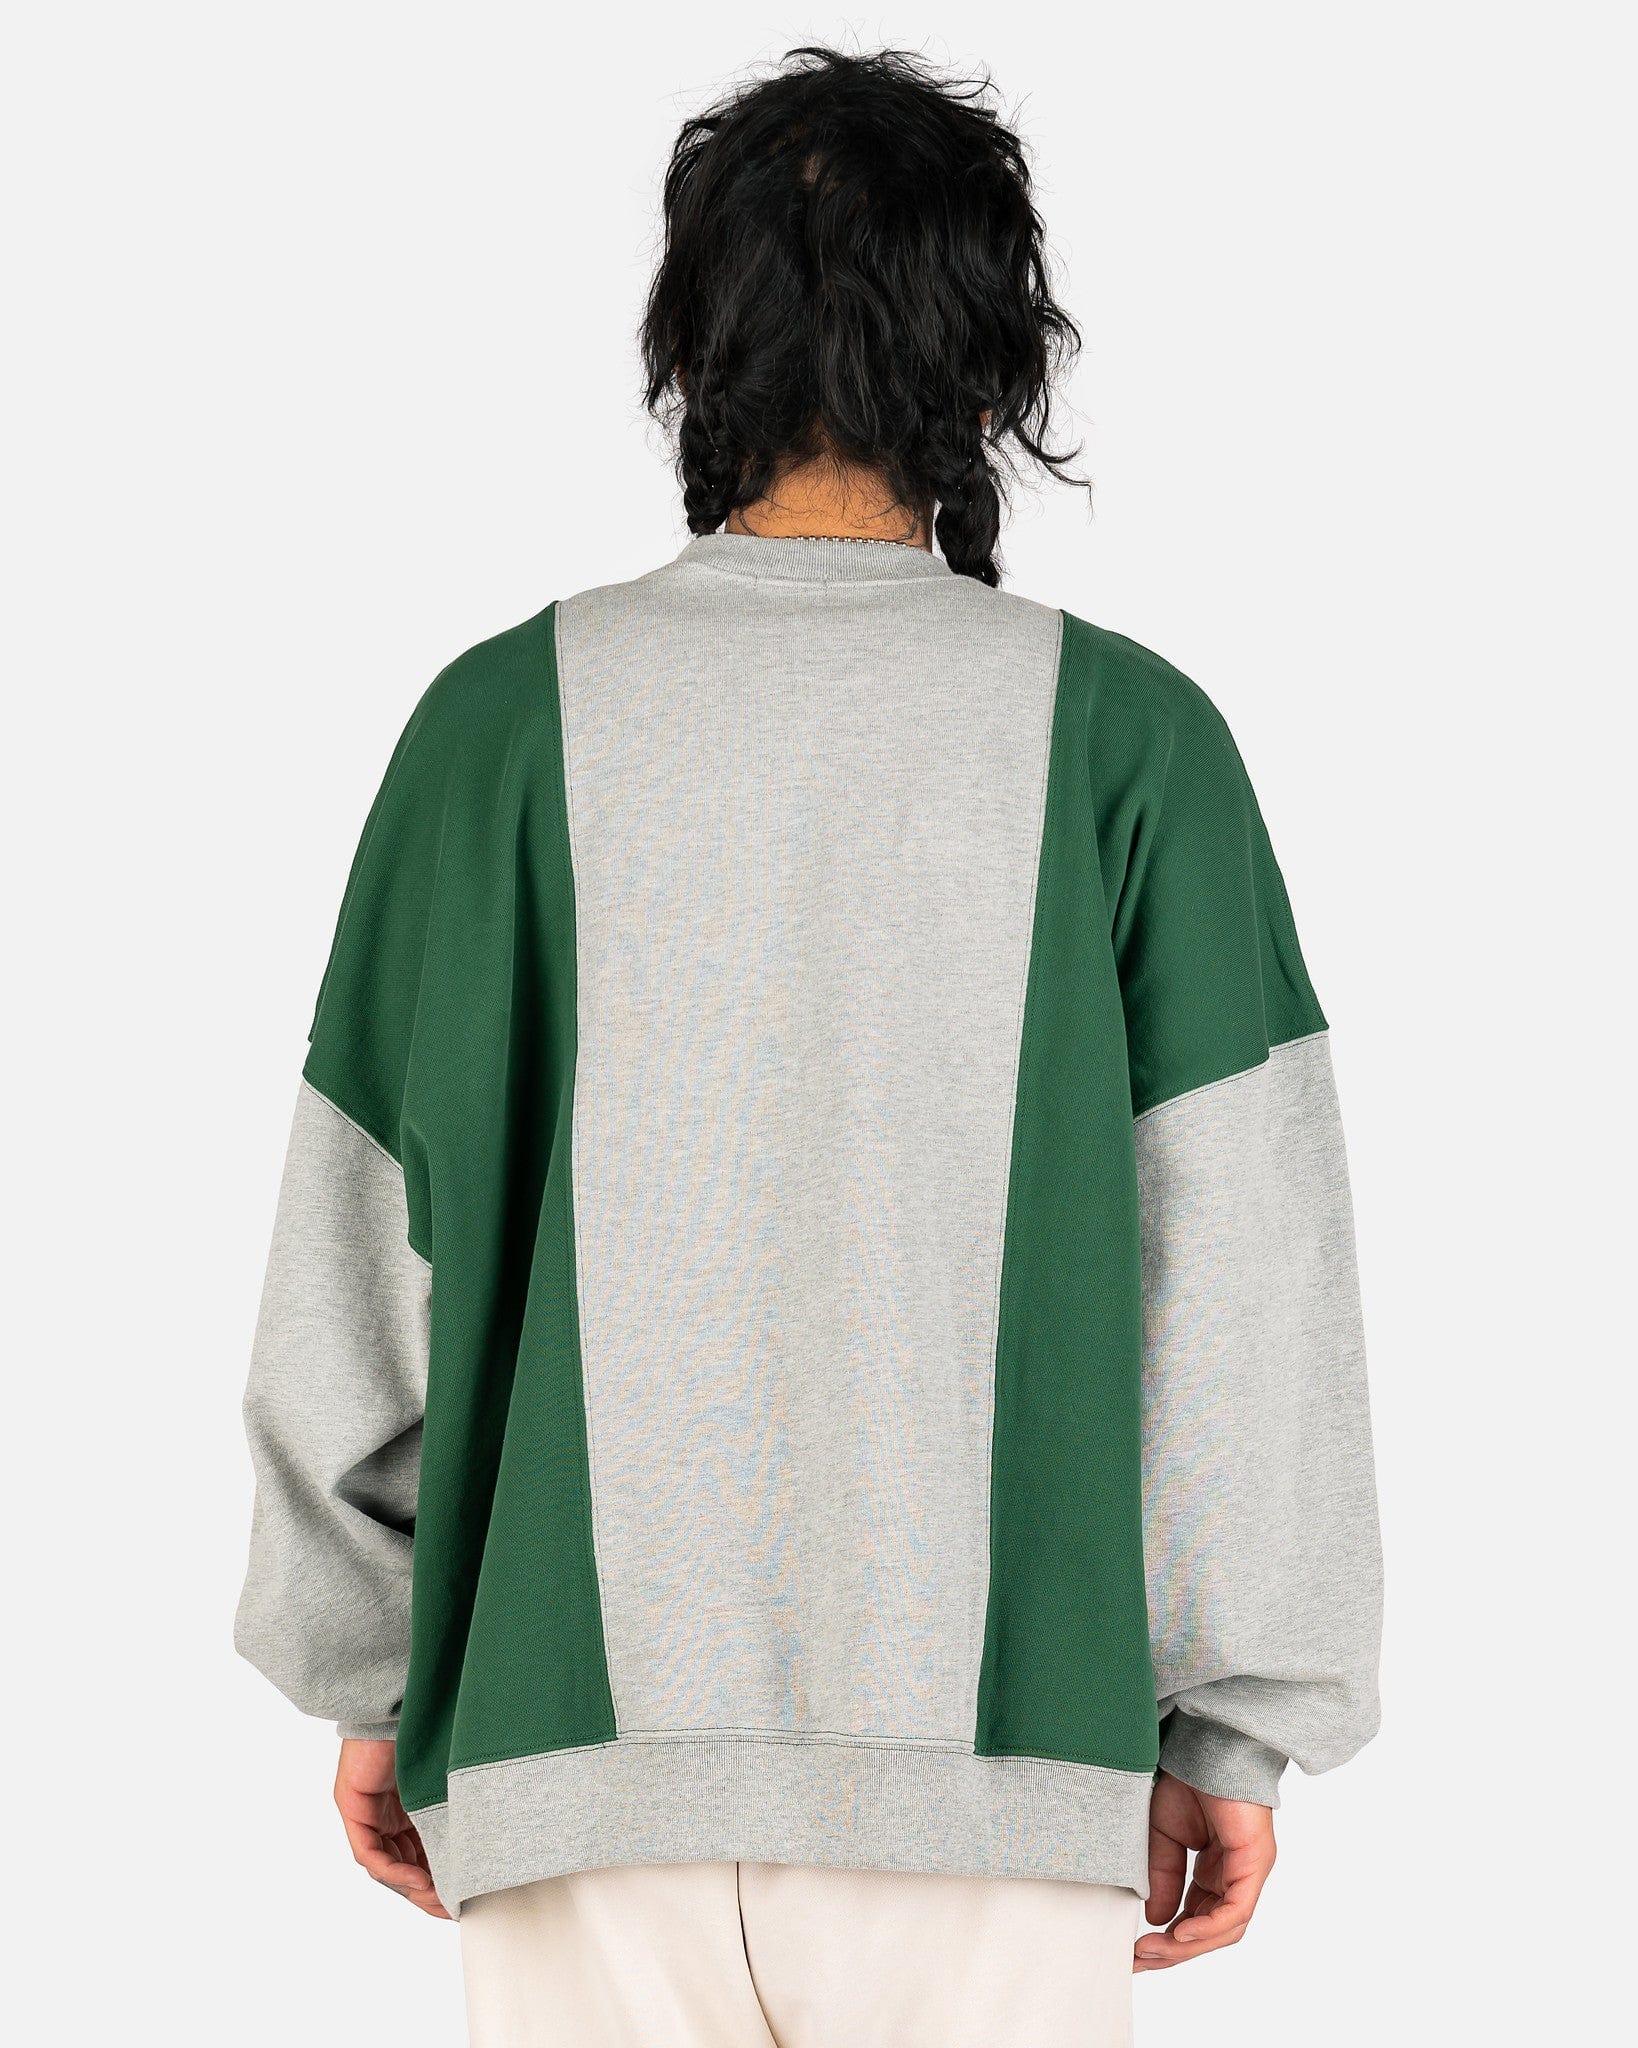 Willy Chavarria Men's Sweatshirts Hooligan Block Sweatshirt in Heather Gray/Dark Green